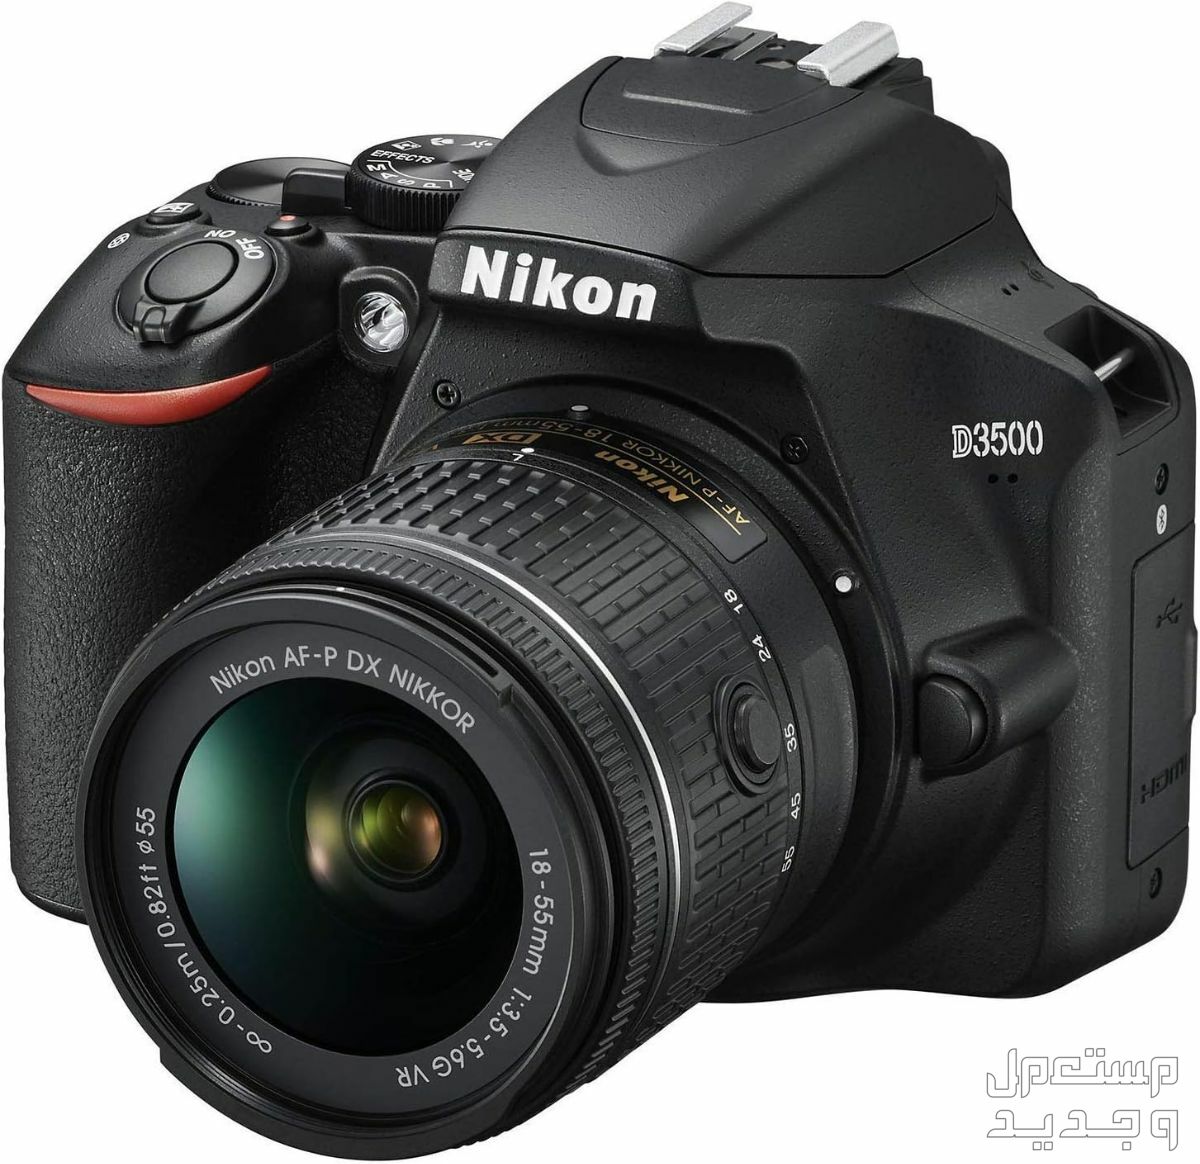 10 كاميرات تصوير ماركات عالمية بأسعار رخيصة في ليبيا مميزات كاميرا Nikon D3500